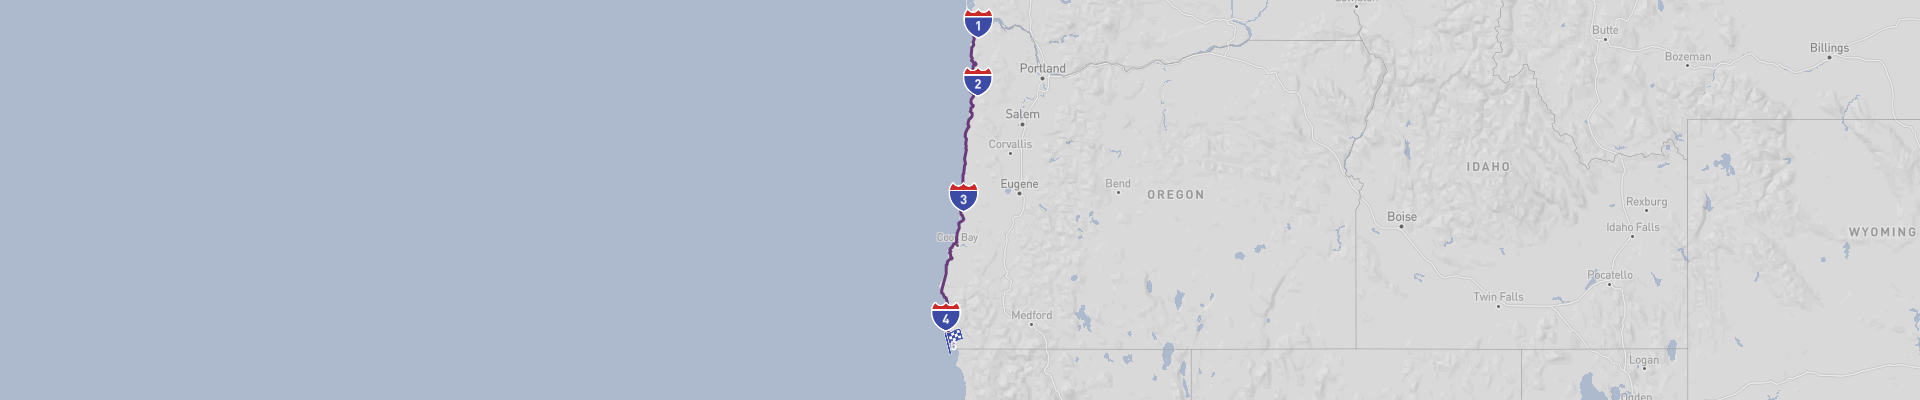 Itinéraire de la côte de l'Oregon sur l'US 101 